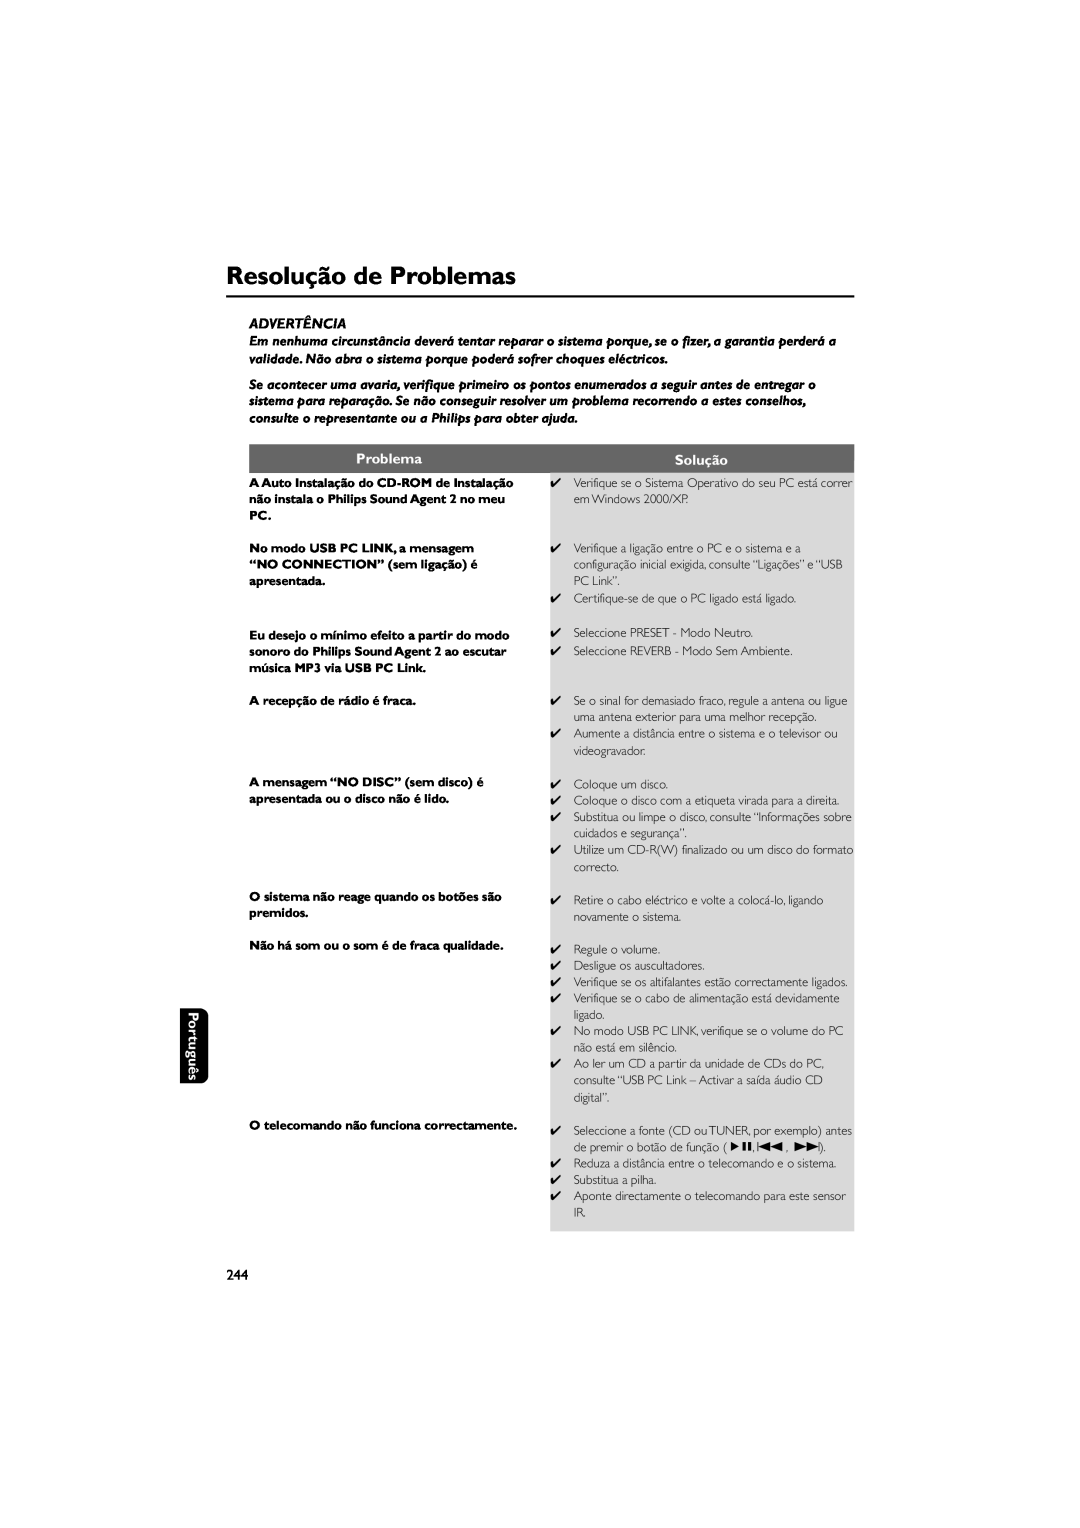 Philips FWM589 manual Resolução de Problemas, Advertência, Português, Solução, A recepção de rádio é fraca 